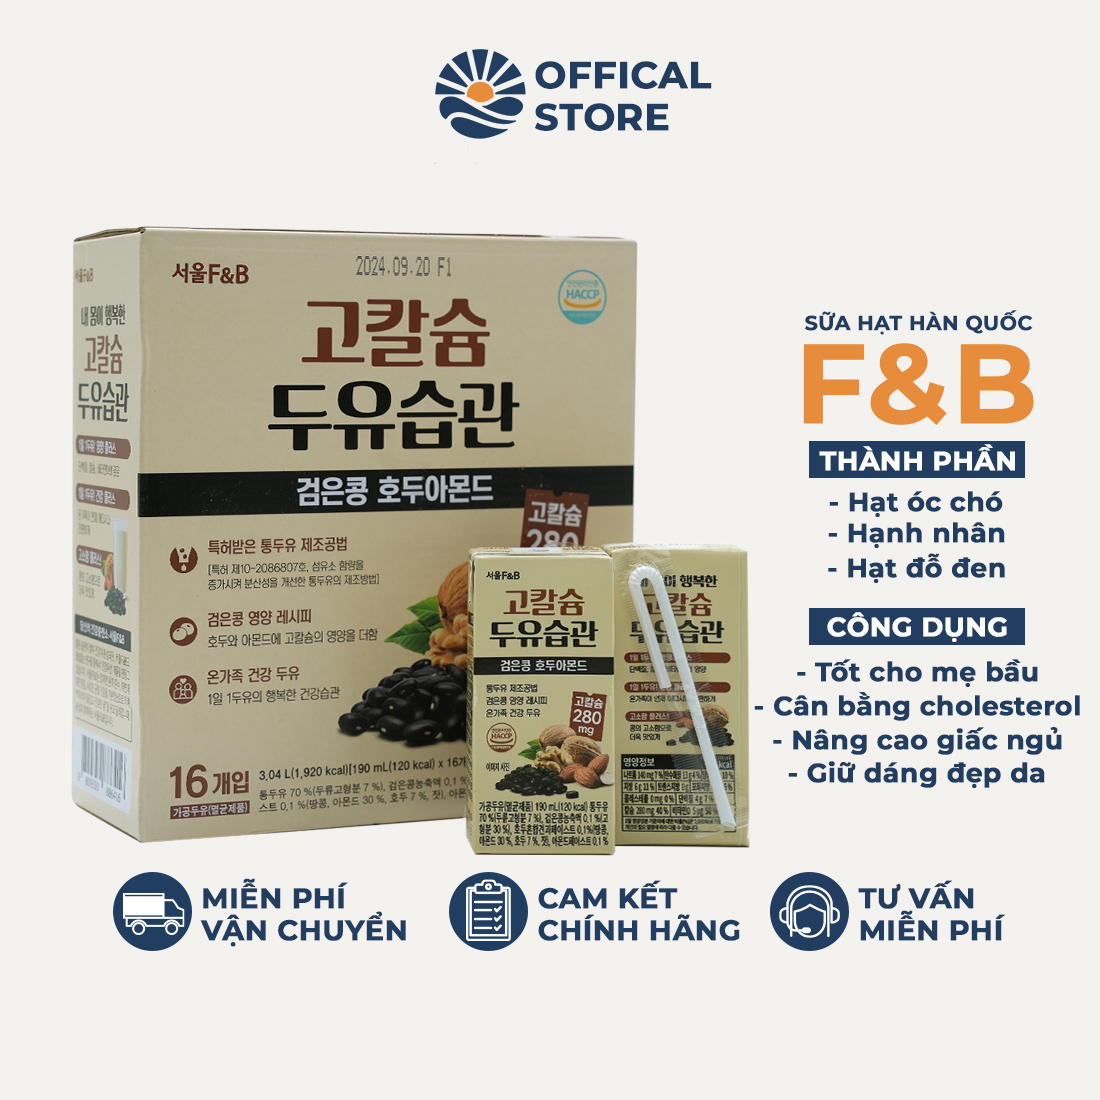 Sữa hạt Seoul F&B - óc chó, hạnh nhân, đậu đen